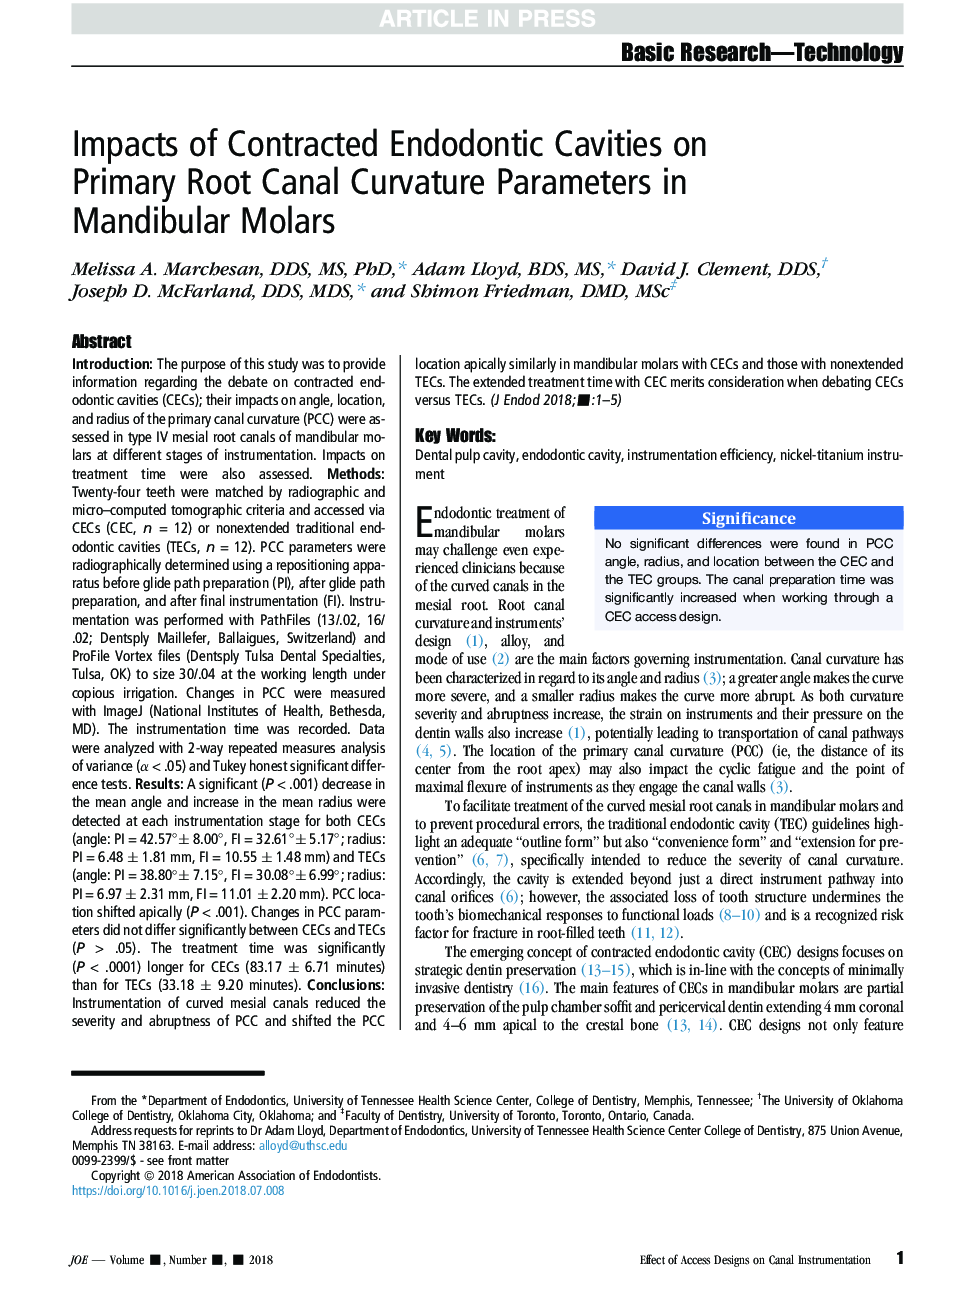 اثرات حفره های اندودونتیک شده در پارامترهای انحنای کانال ریشه در مولر ماندوبولار